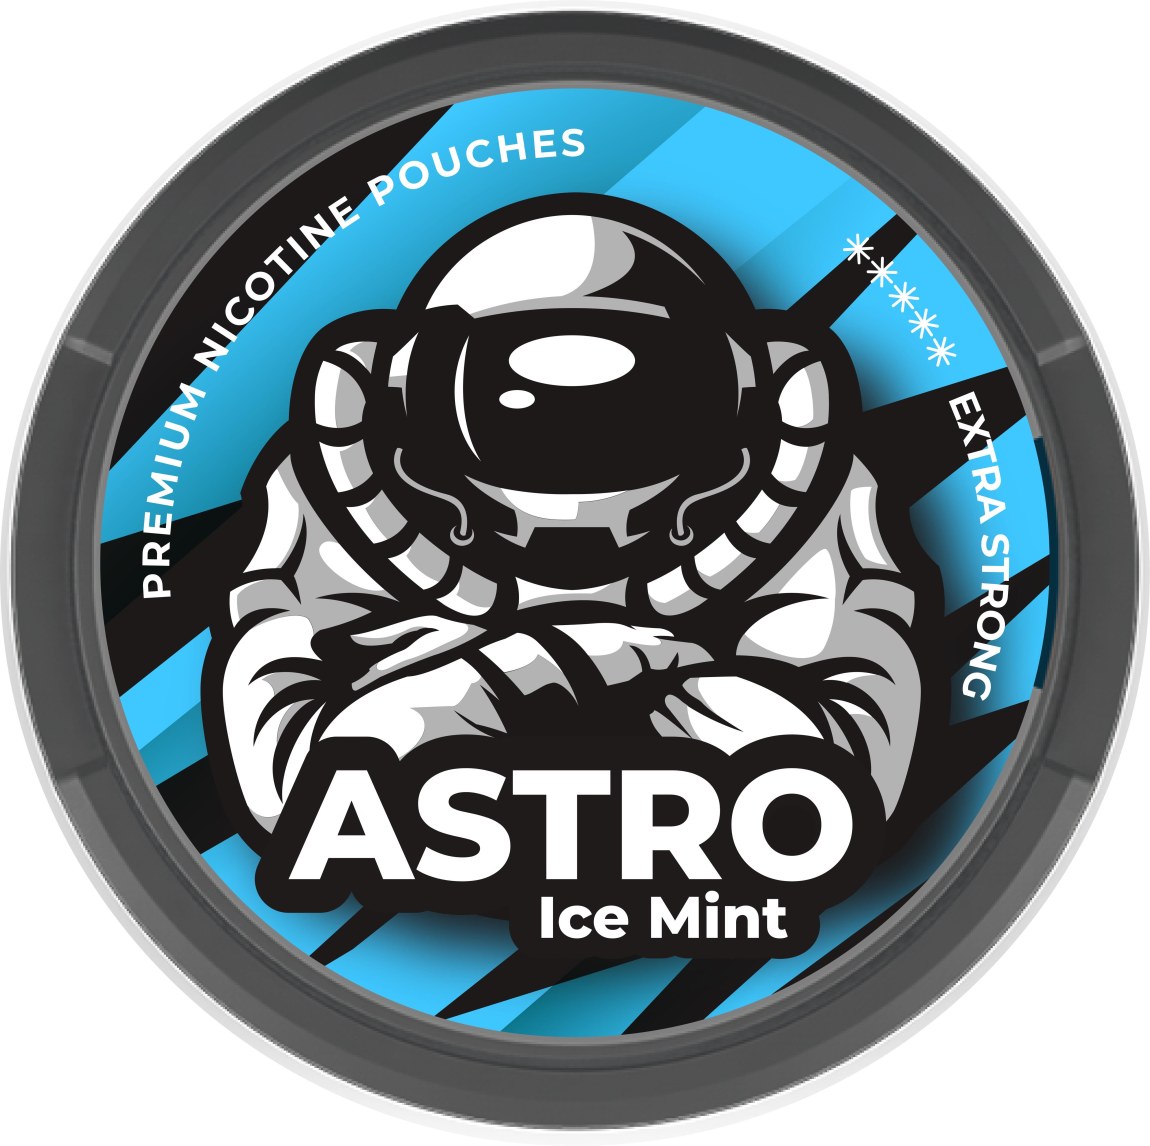 Astro Ice Mint - Astro